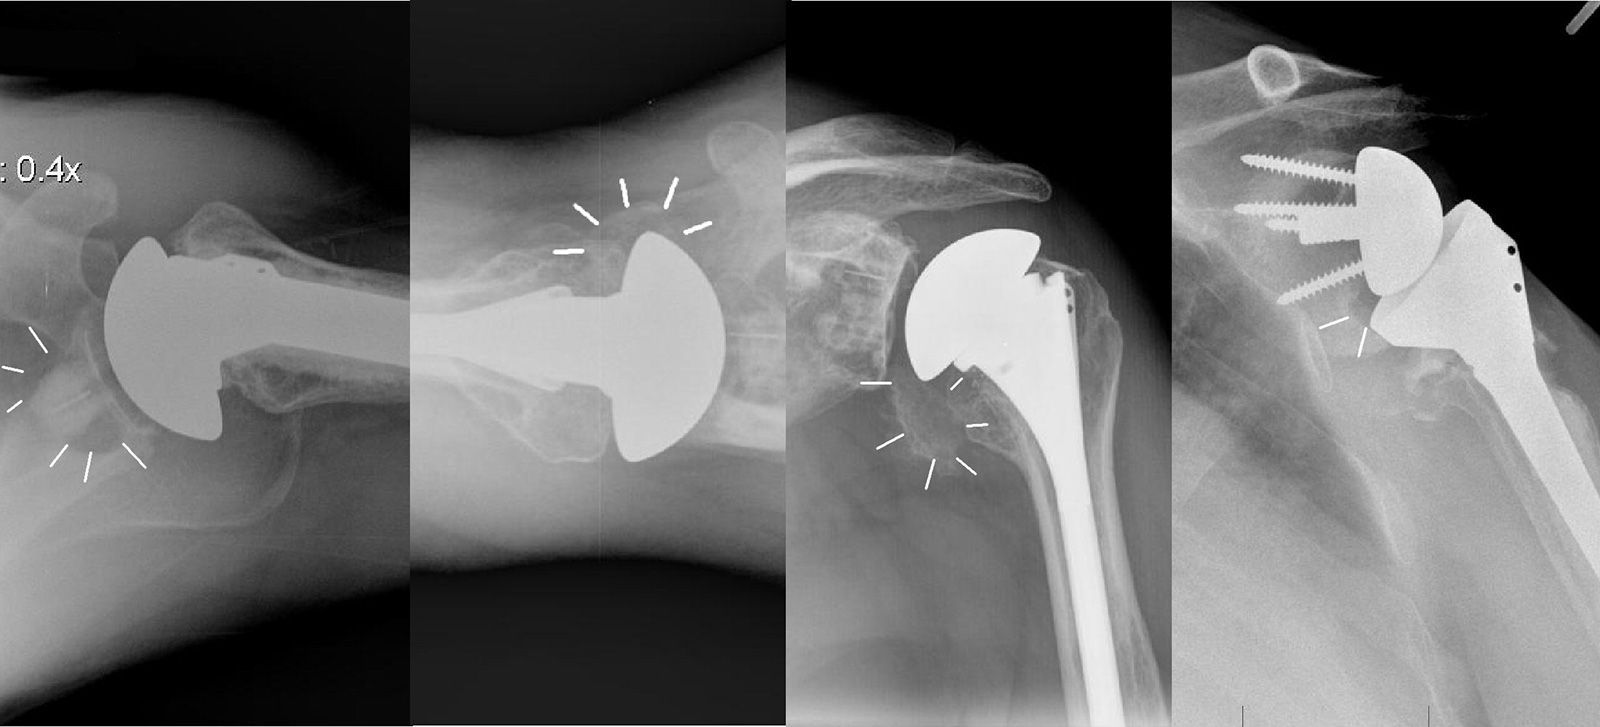 Abb. 1-55: Das axiale Röntgenbild zeigt ausgedehnte Osteolysen des knöchernen Glenoids nach zementierter Fixierung der Glenoidkomponente (A). Pseudarthrose nach Osteotomie des Tuberculum minor zur Refixierung des Subscapularis bei einer primären totalen S